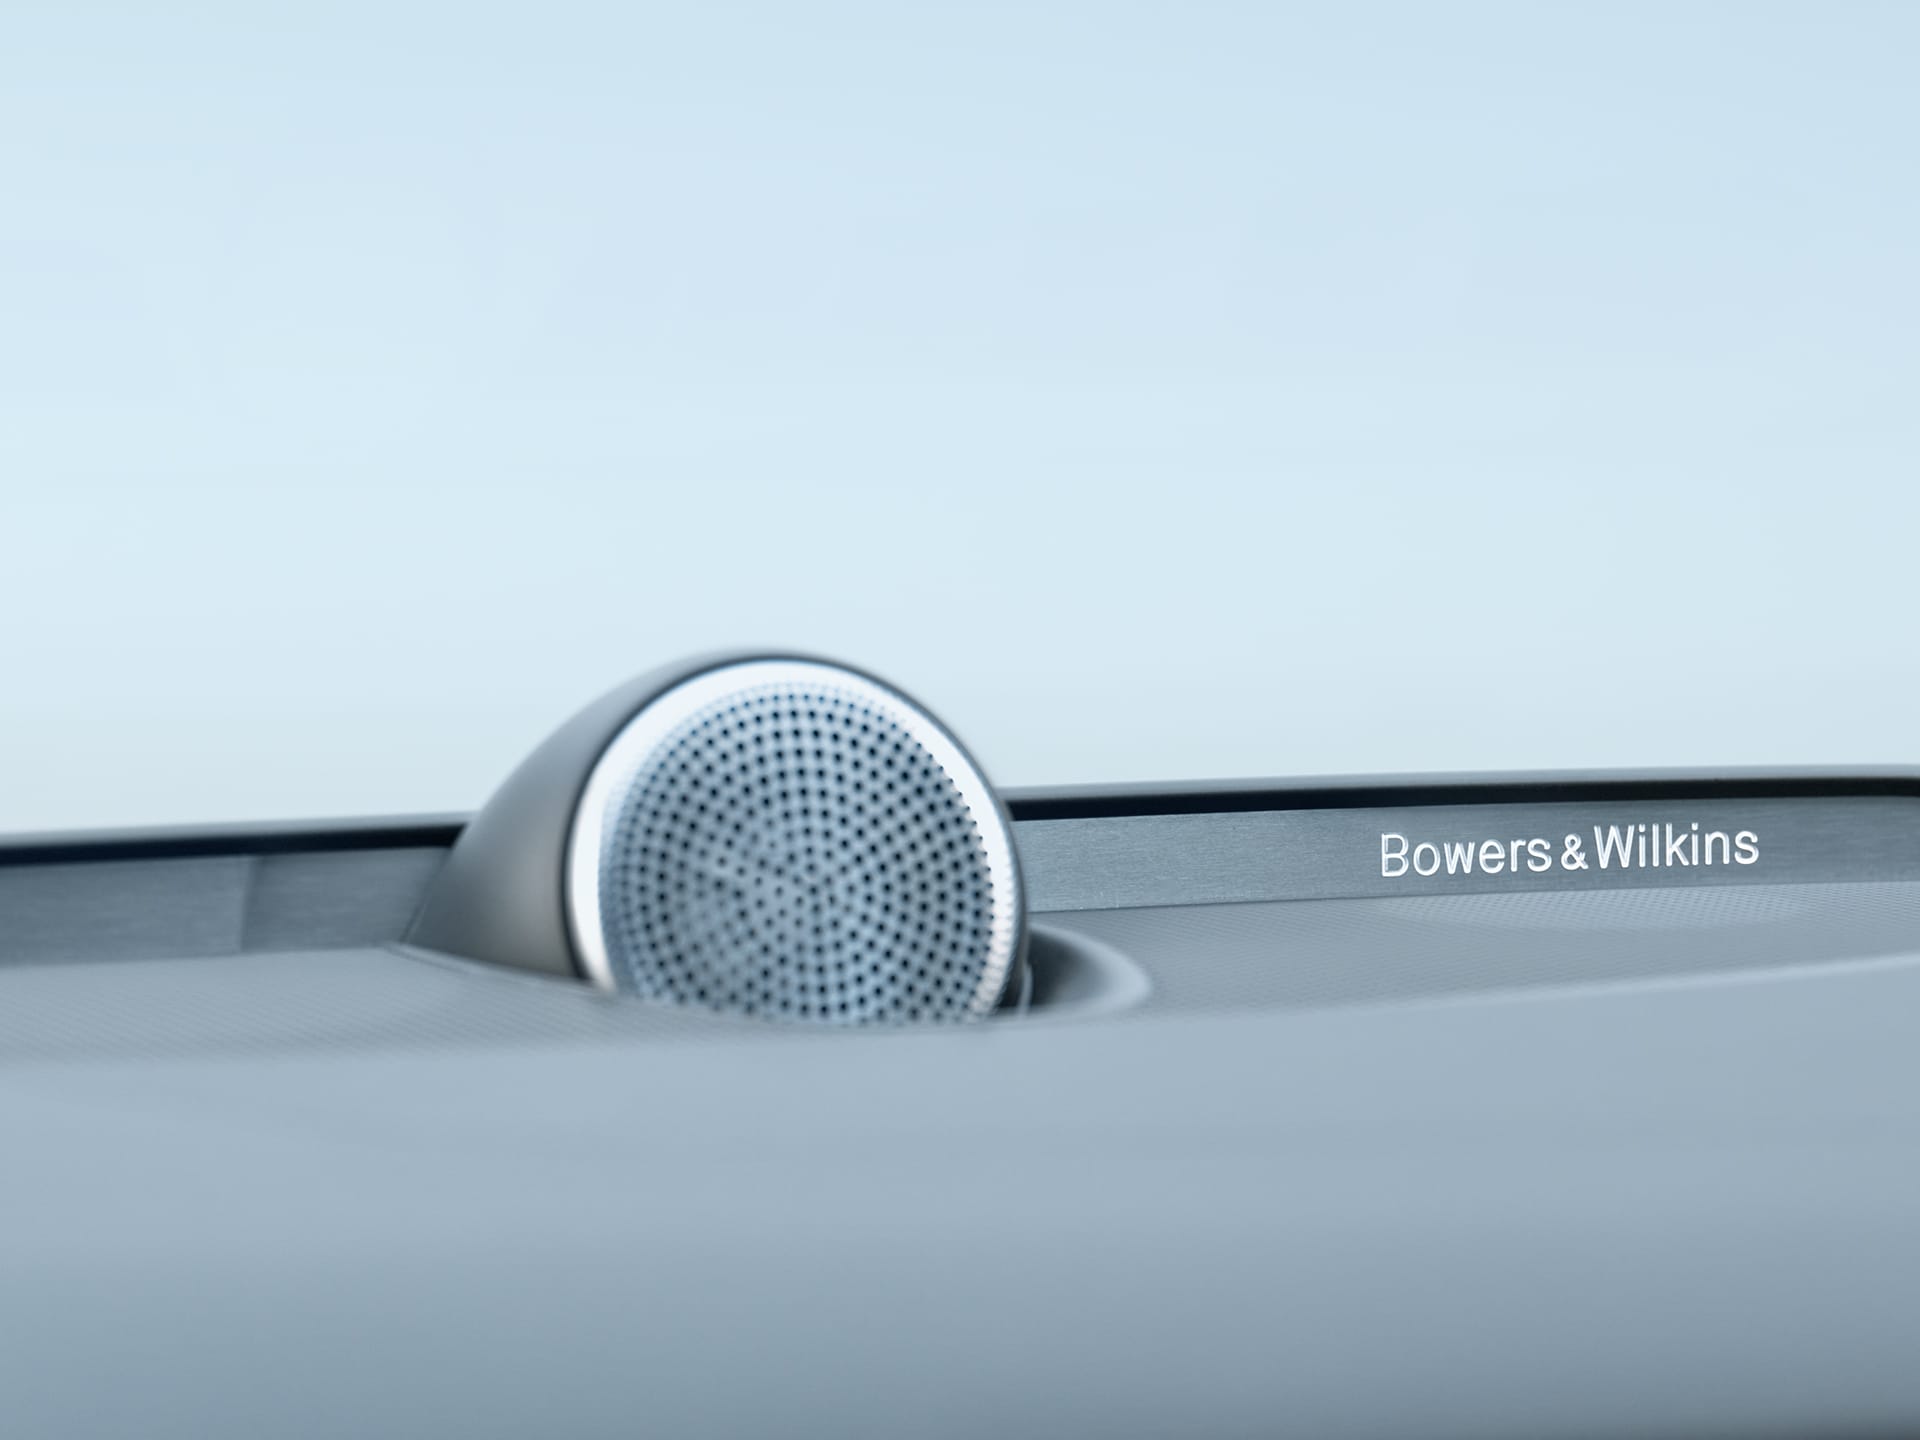 Zvučnici Bowers & Wilkins unutar limuzine Volvo S60.